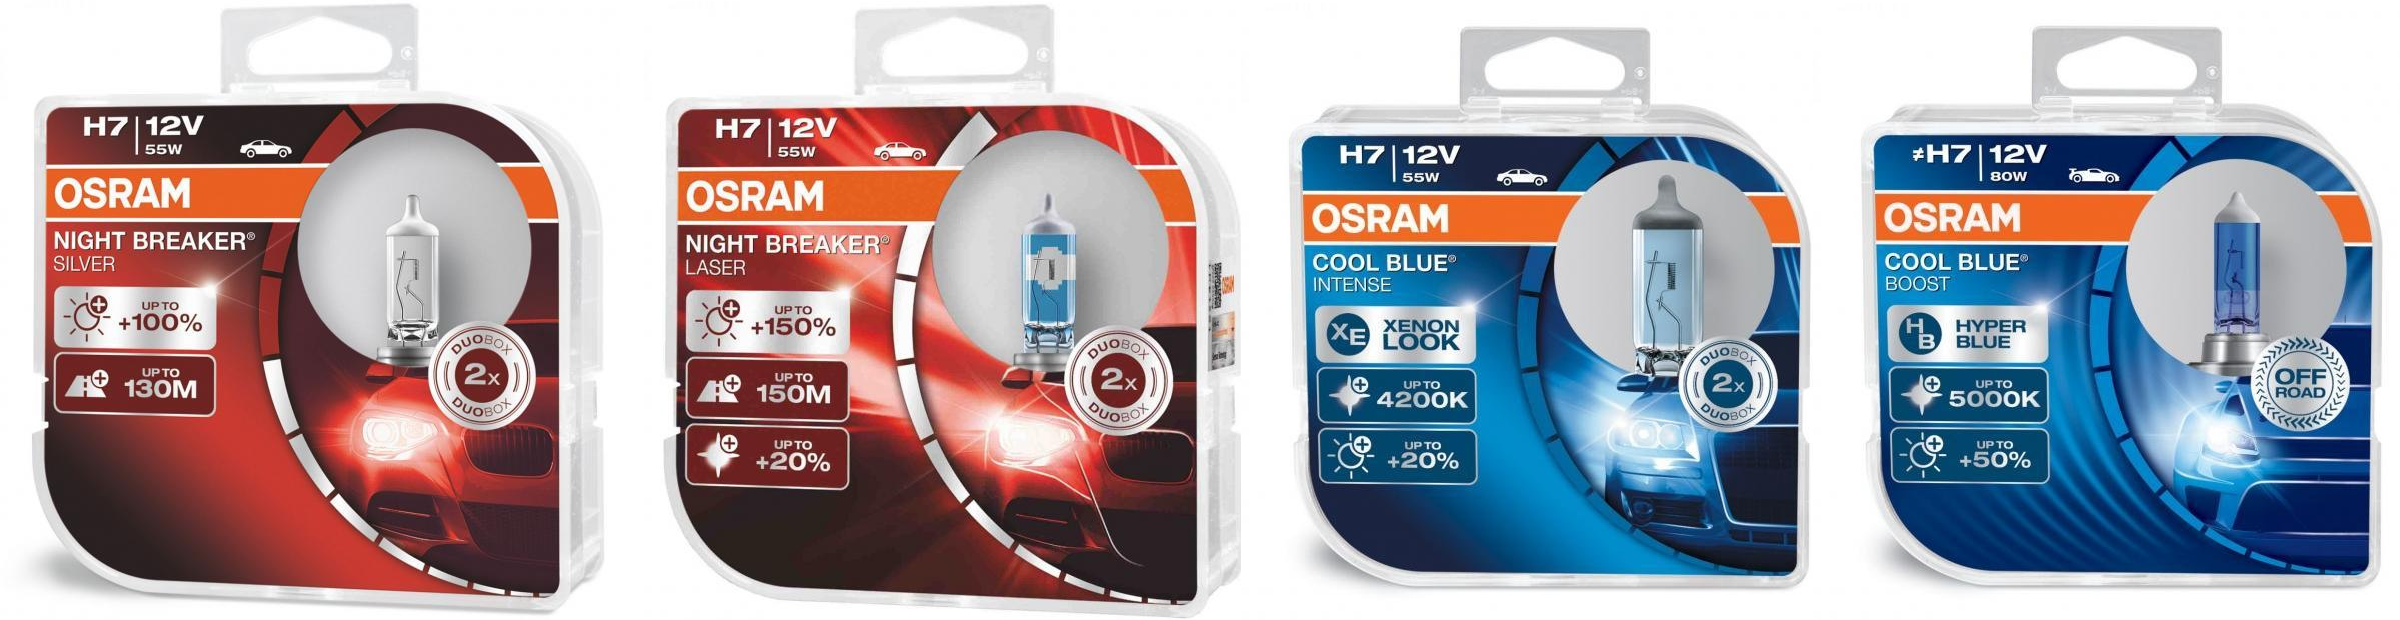 Original Osram Cool Blue Intense Duo-Pack H15 Bulbs Lamps for Low